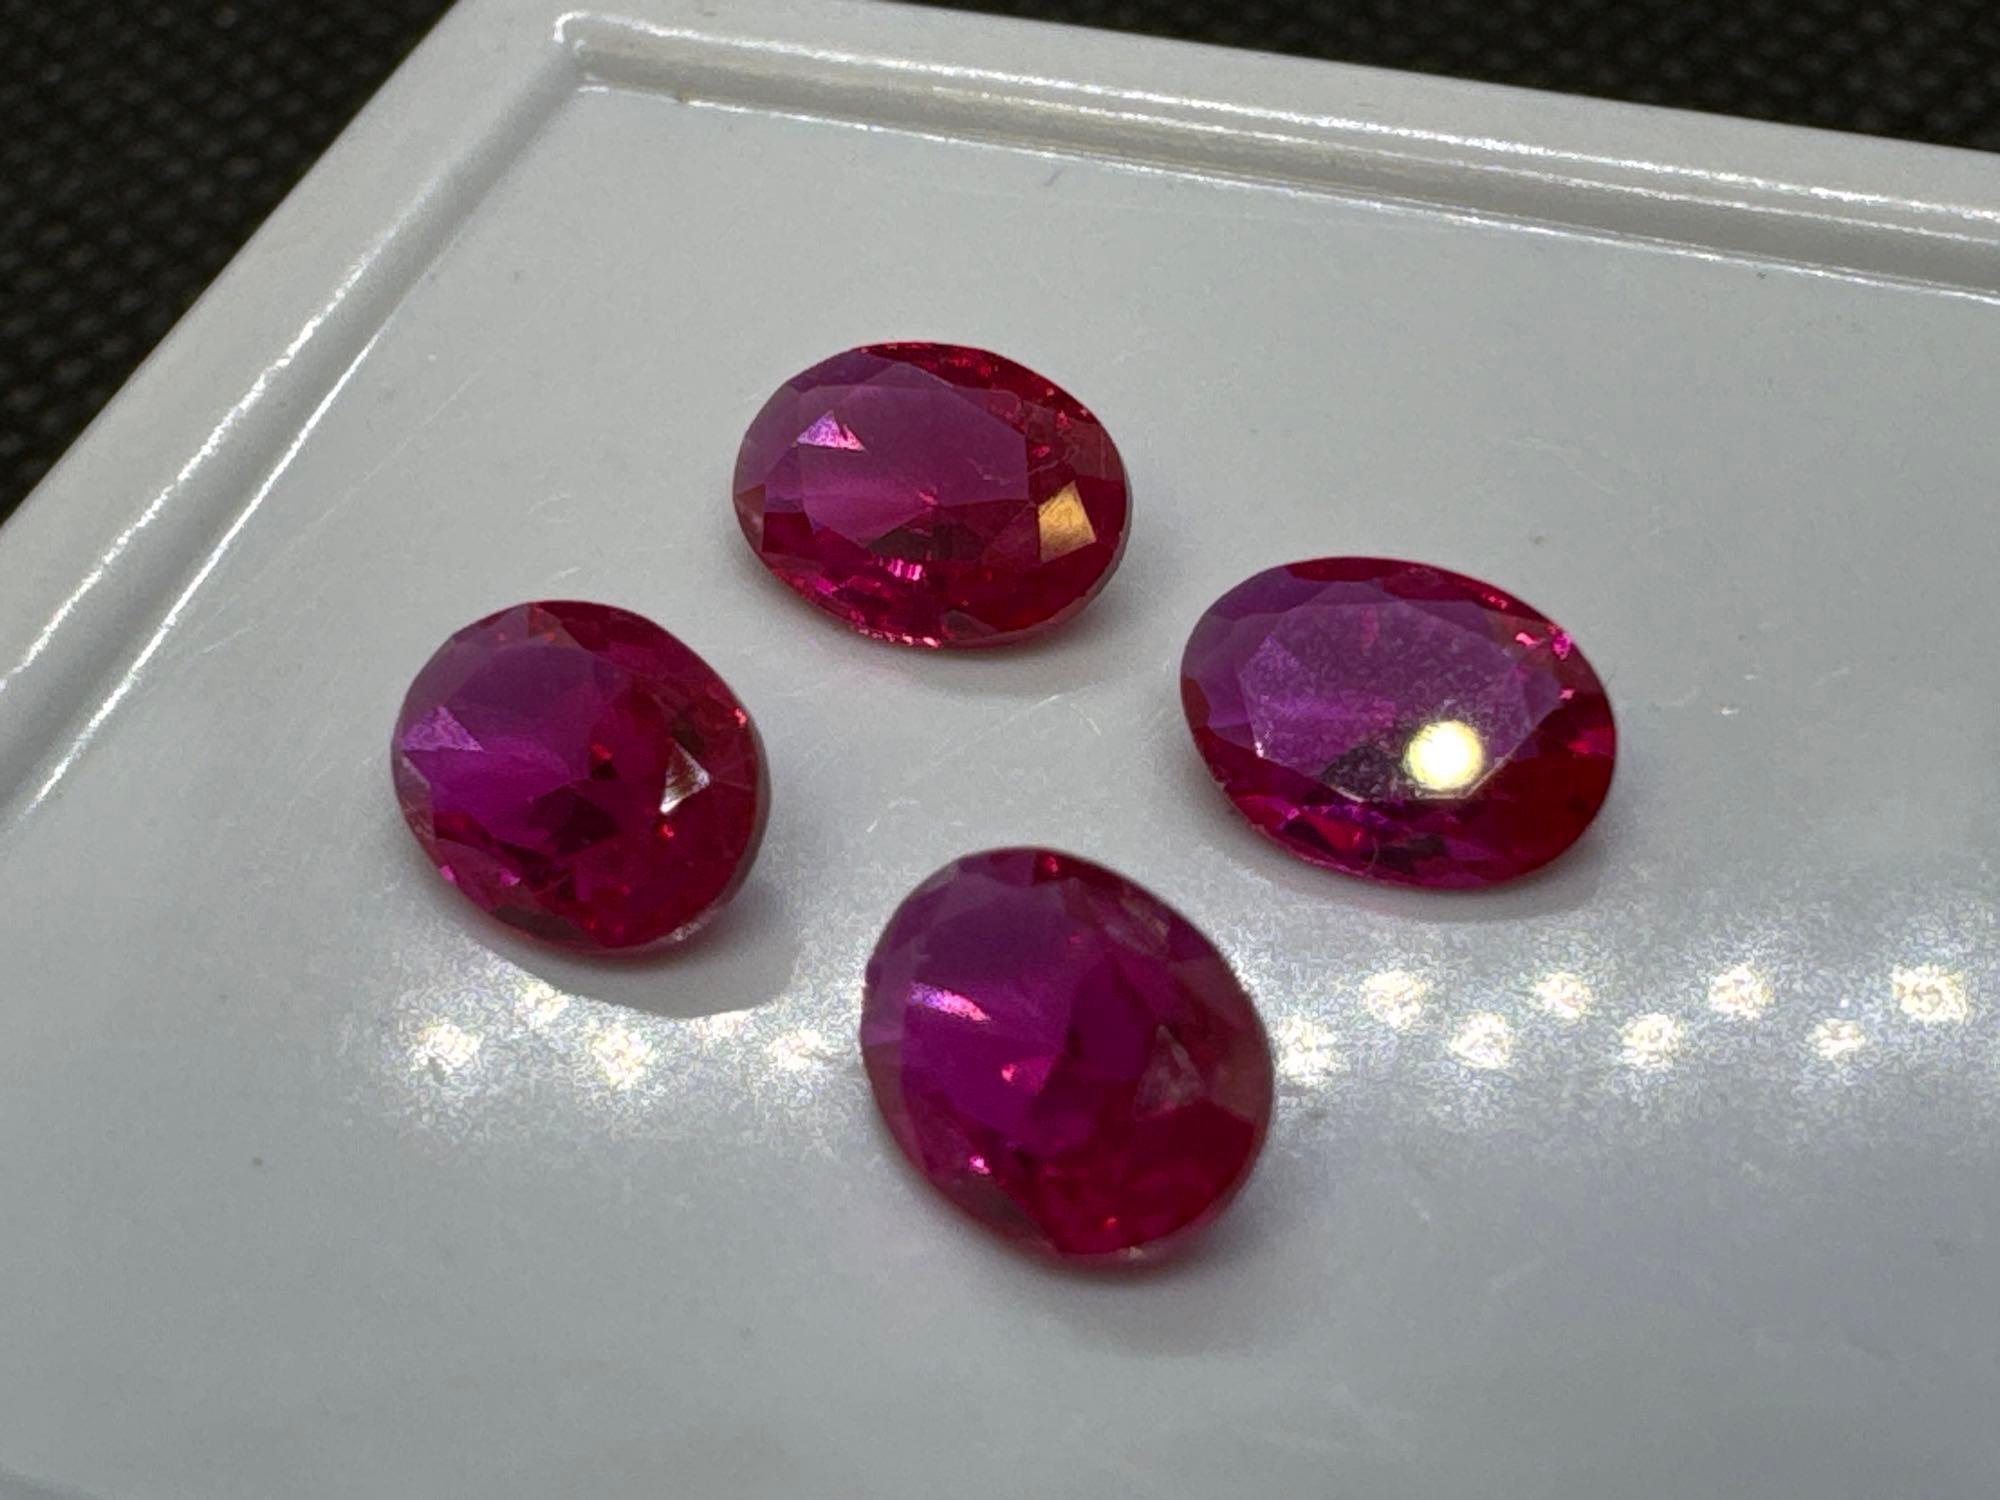 4x Red Heart Cut Ruby Gemstones 3.10 Ct